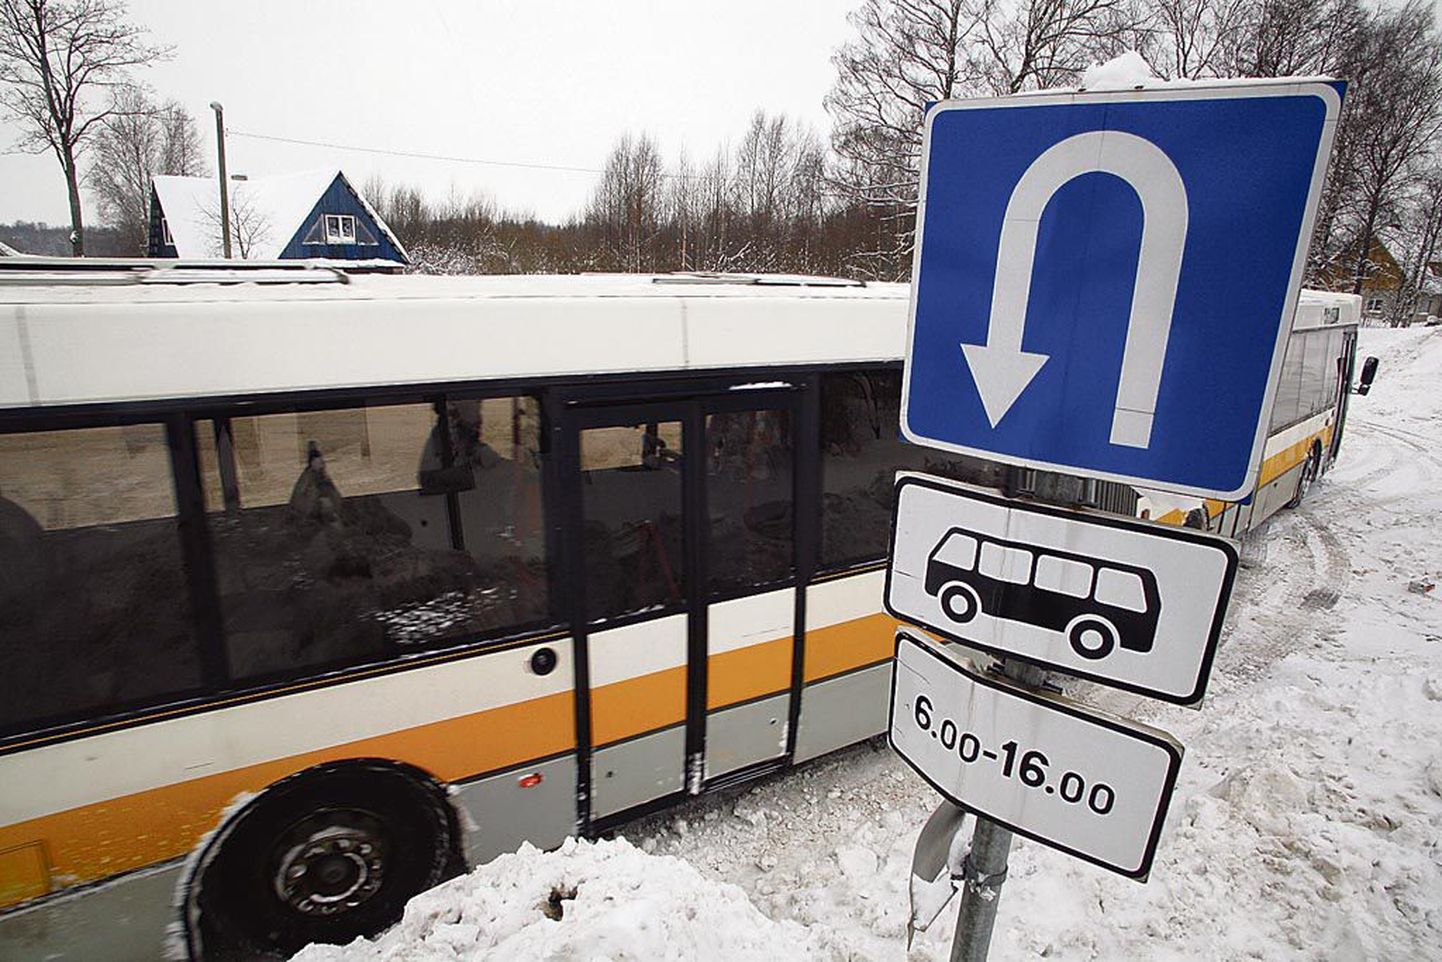 Tänavu võivad muutuda mitmed Pärnu linnabusside sõidusoodustused. Esimesena arutatakse tudengite üksikpileti hinda, mis praegu on õpilaste omast erinev.